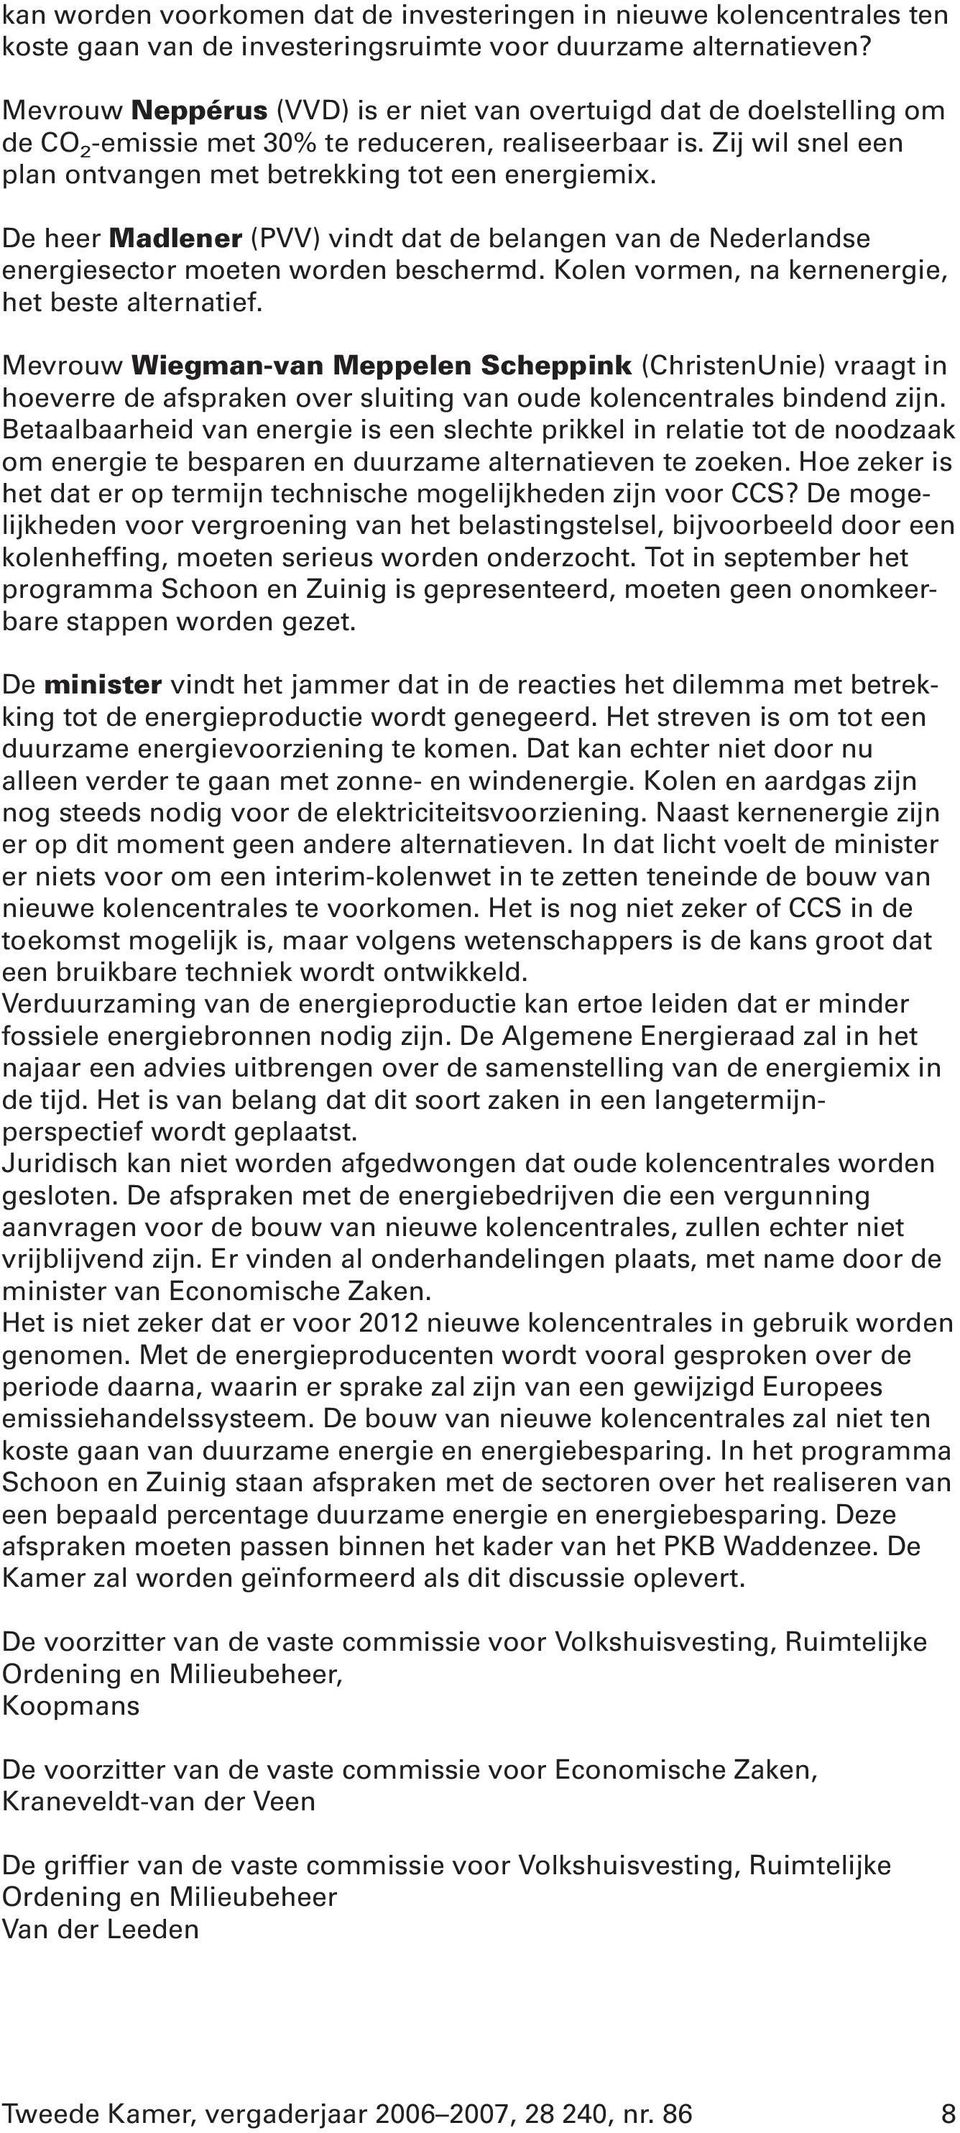 De heer Madlener (PVV) vindt dat de belangen van de Nederlandse energiesector moeten worden beschermd. Kolen vormen, na kernenergie, het beste alternatief.